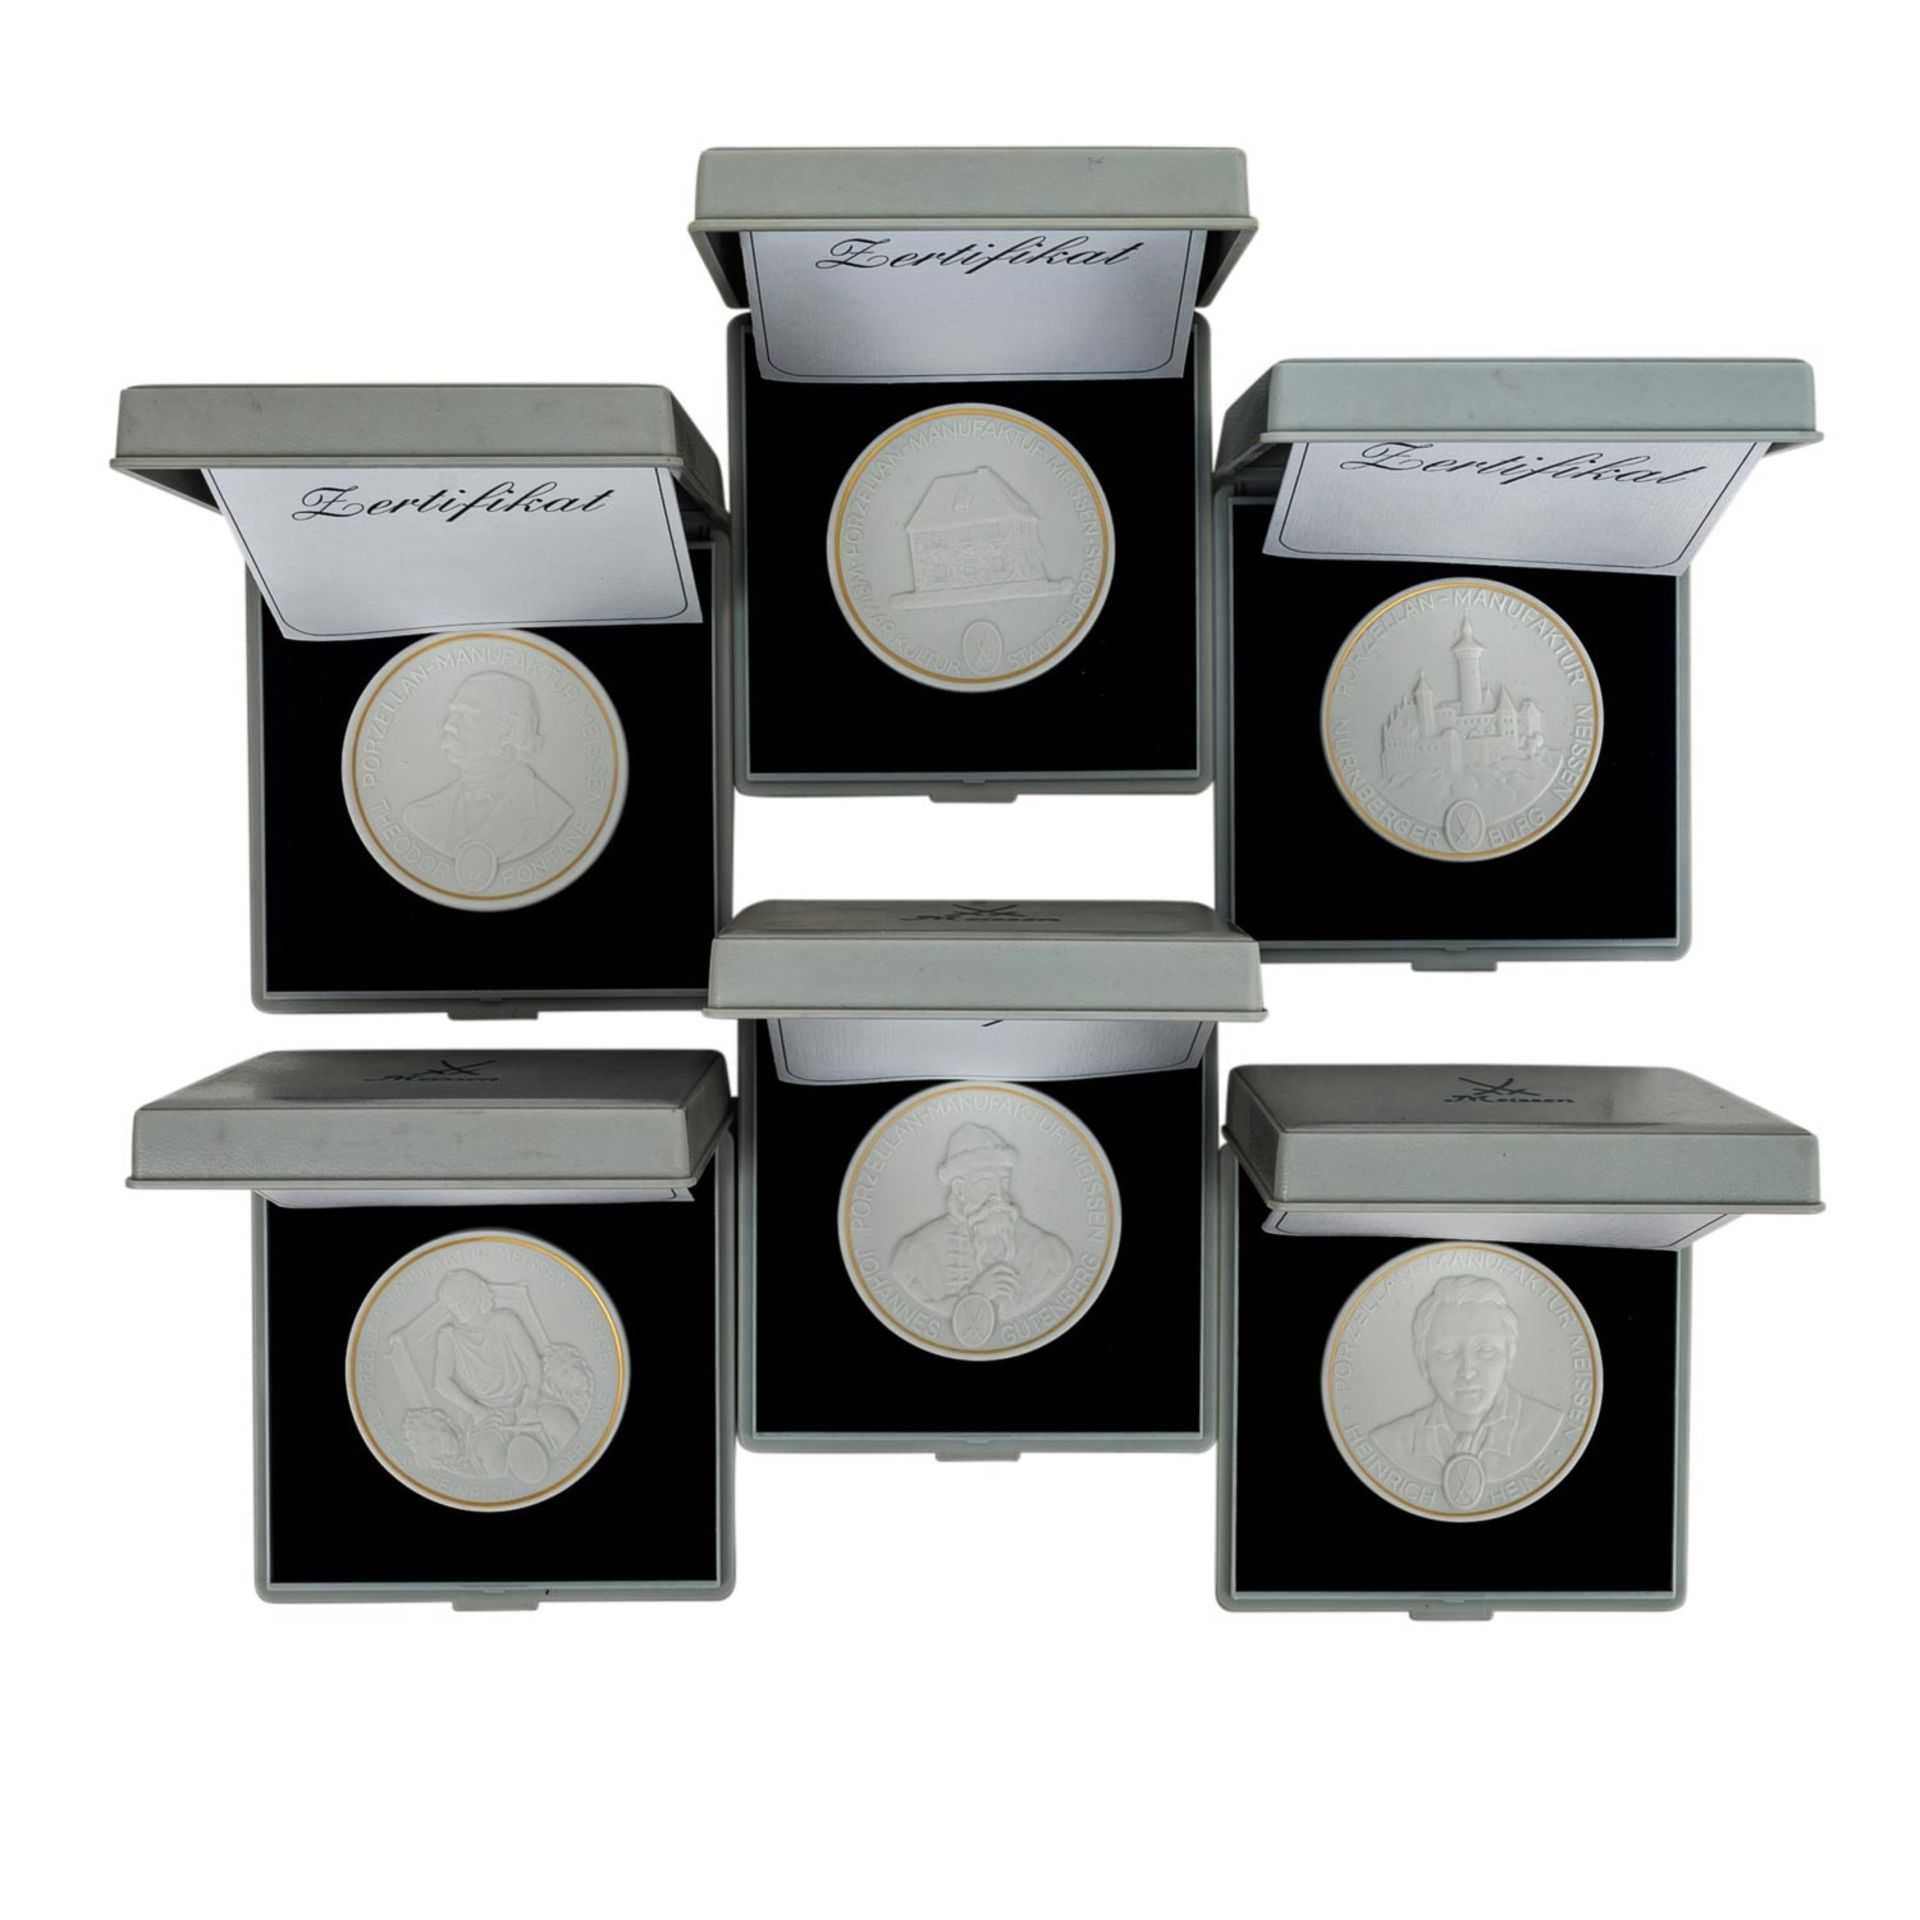 Meissen - Taler und Medaillen aus Bisquitporzellan, - Image 3 of 4